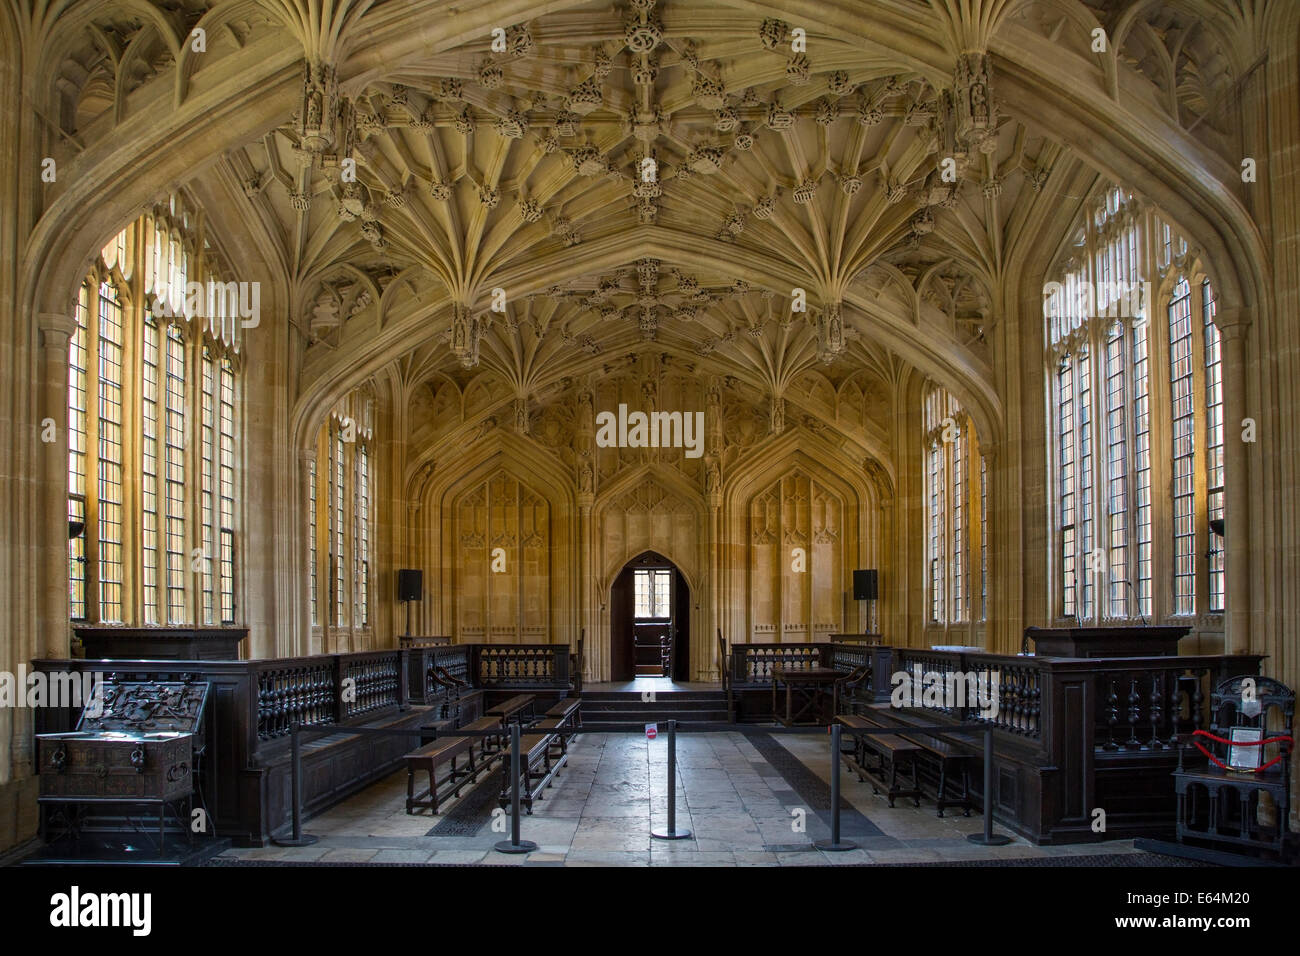 Innenraum der Divinity School - 1488 erbaut, Teil der aktuellen Bodleian Libraries, Oxford, Oxfordshire, England Stockfoto